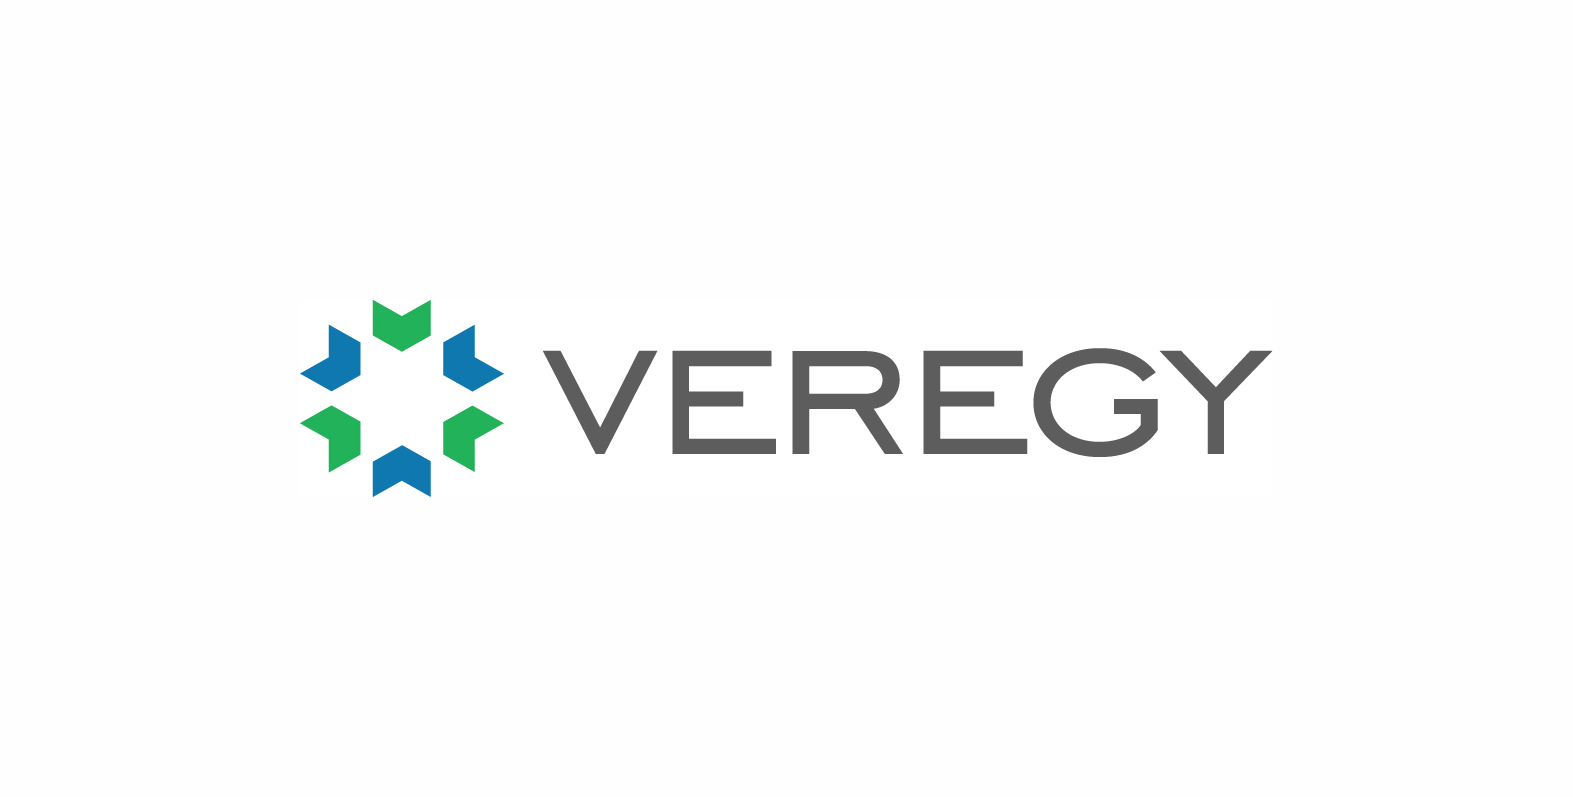 Veregy Logo_Linkedin.jpg